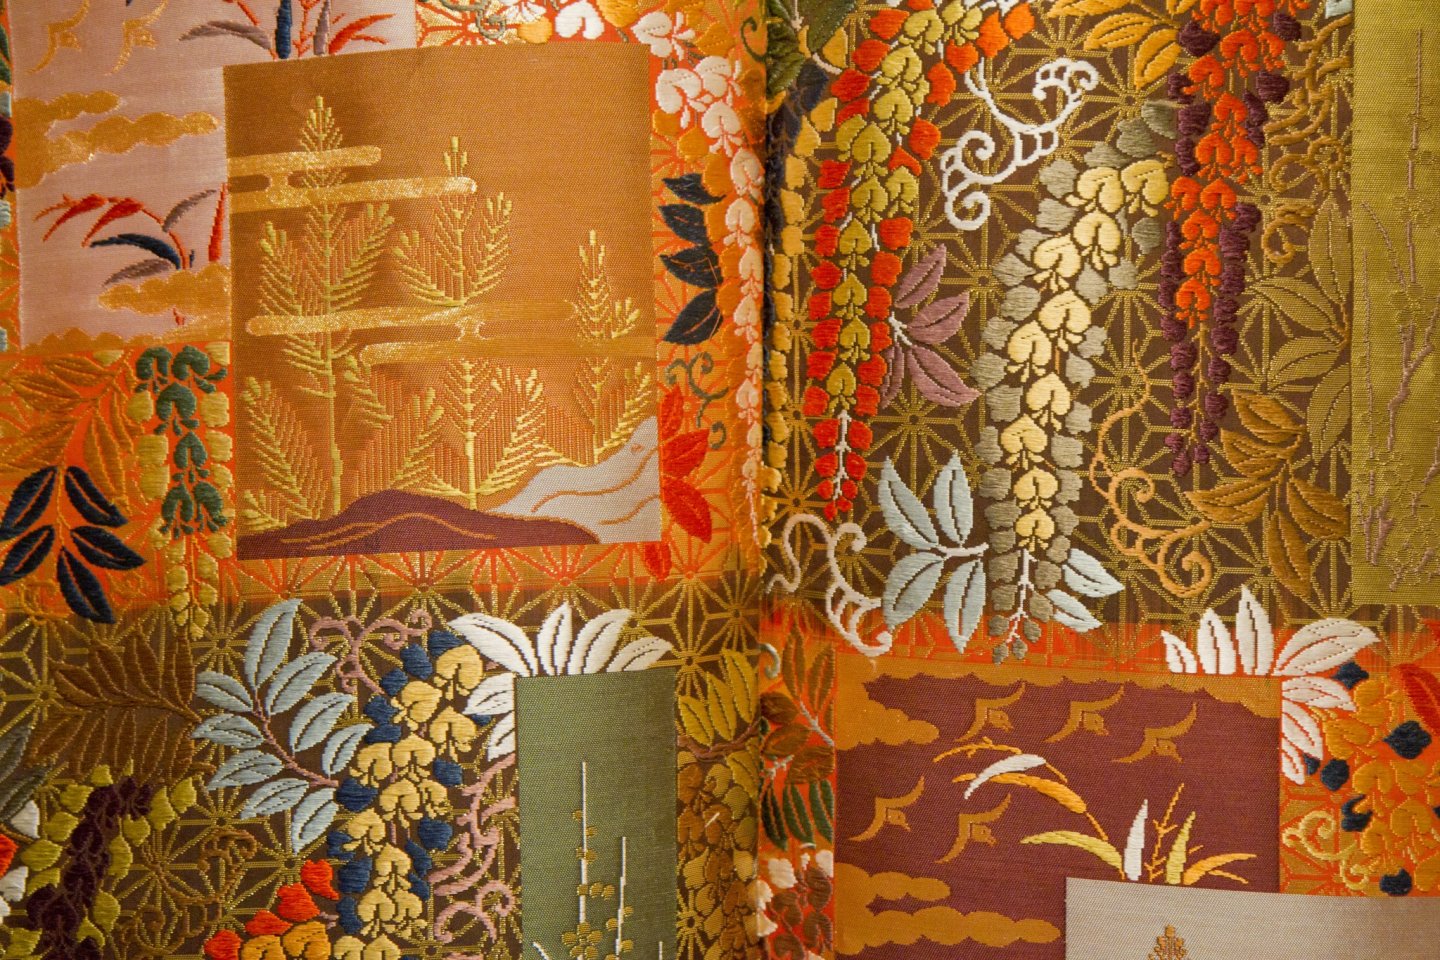 Detail of an exquisite kimono